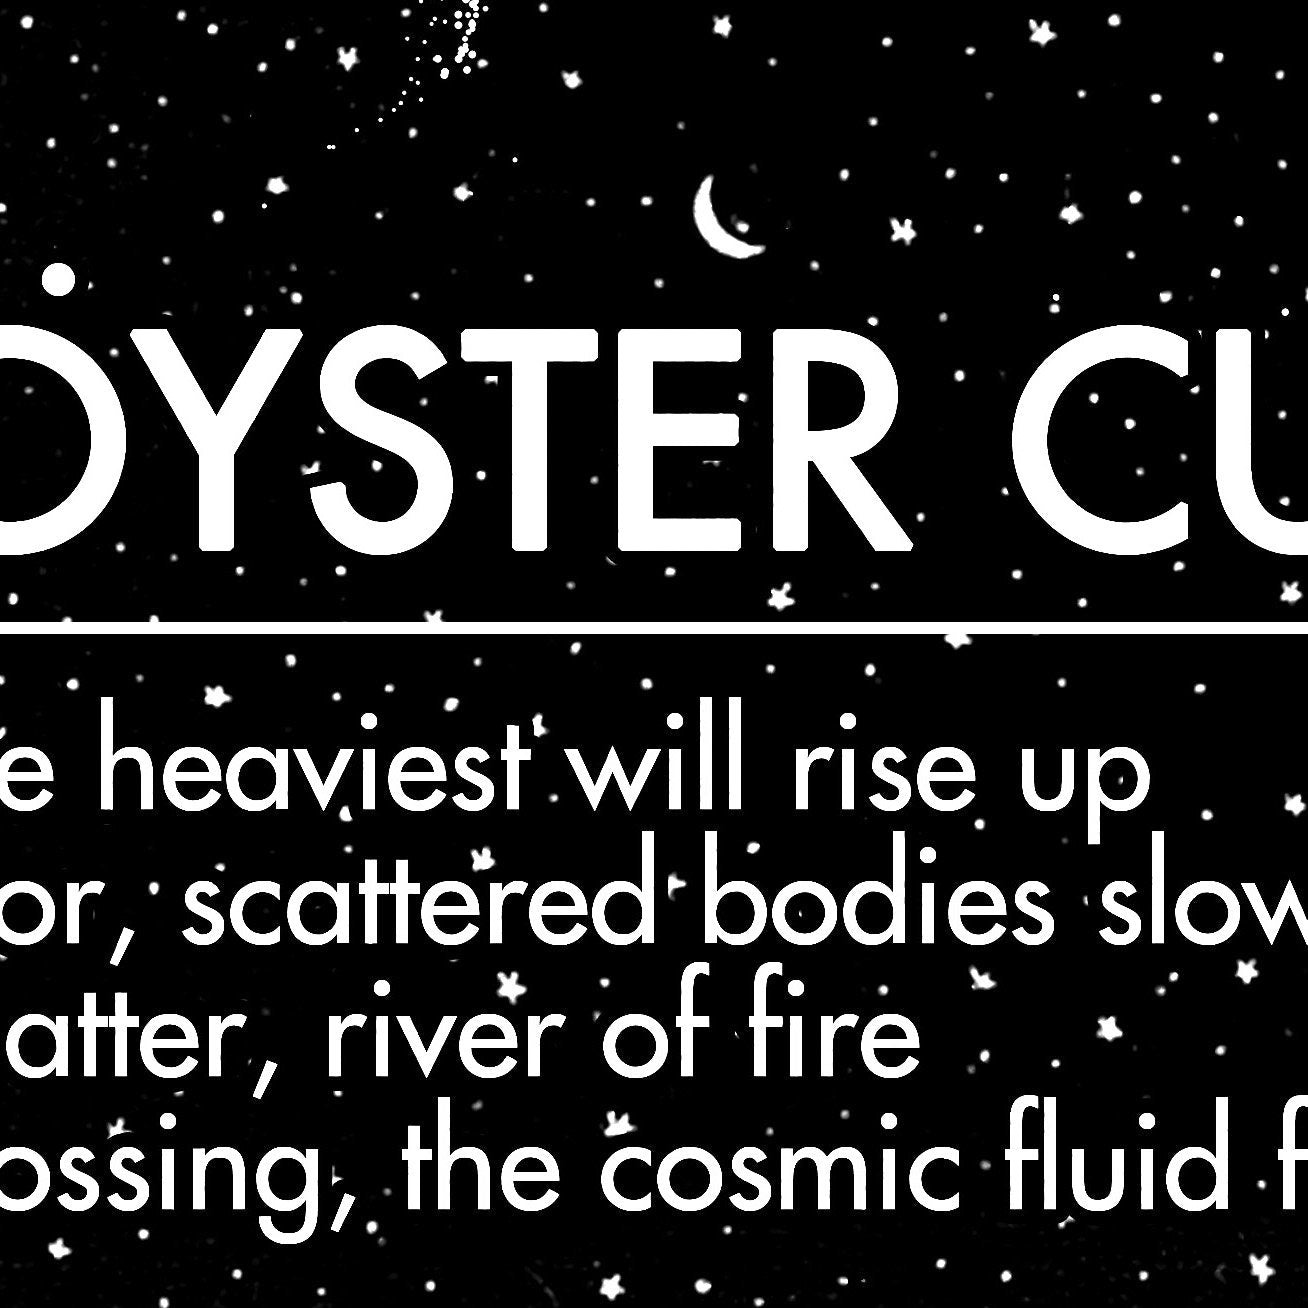 Blue Oyster Cult, Heavy Metal lyrics typography | 11x17 Art Print